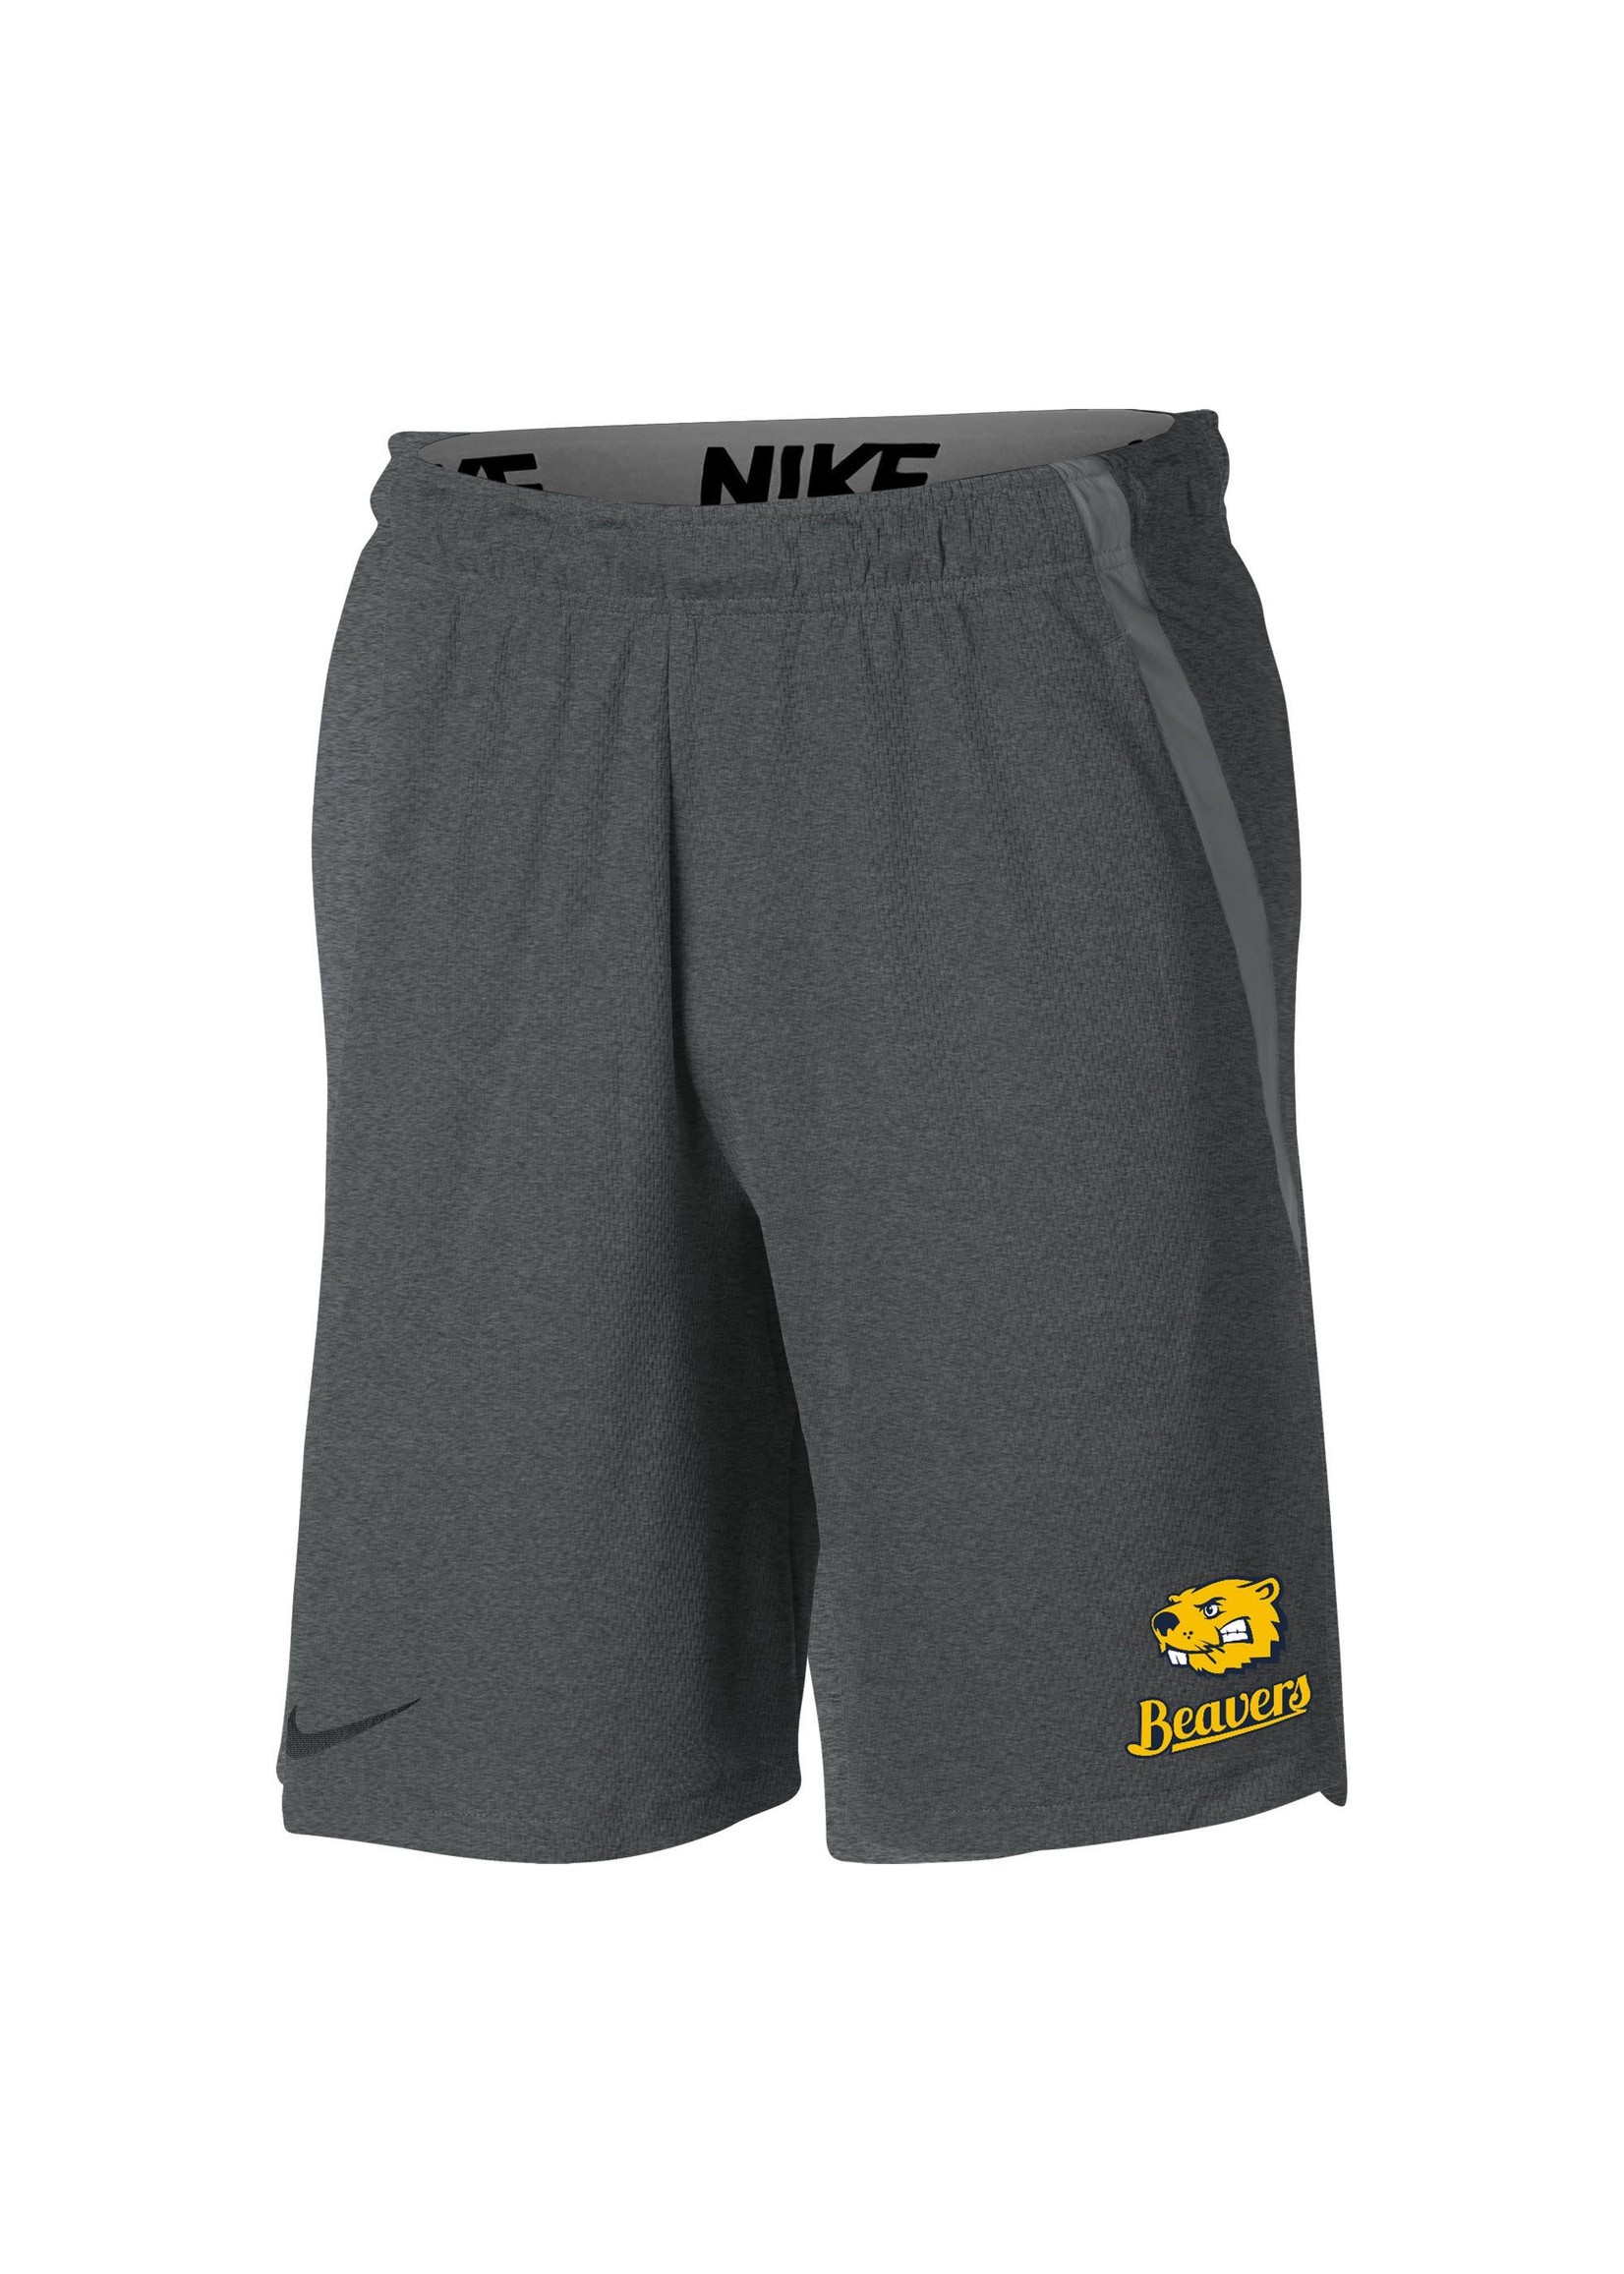 Nike Men's Hype Short